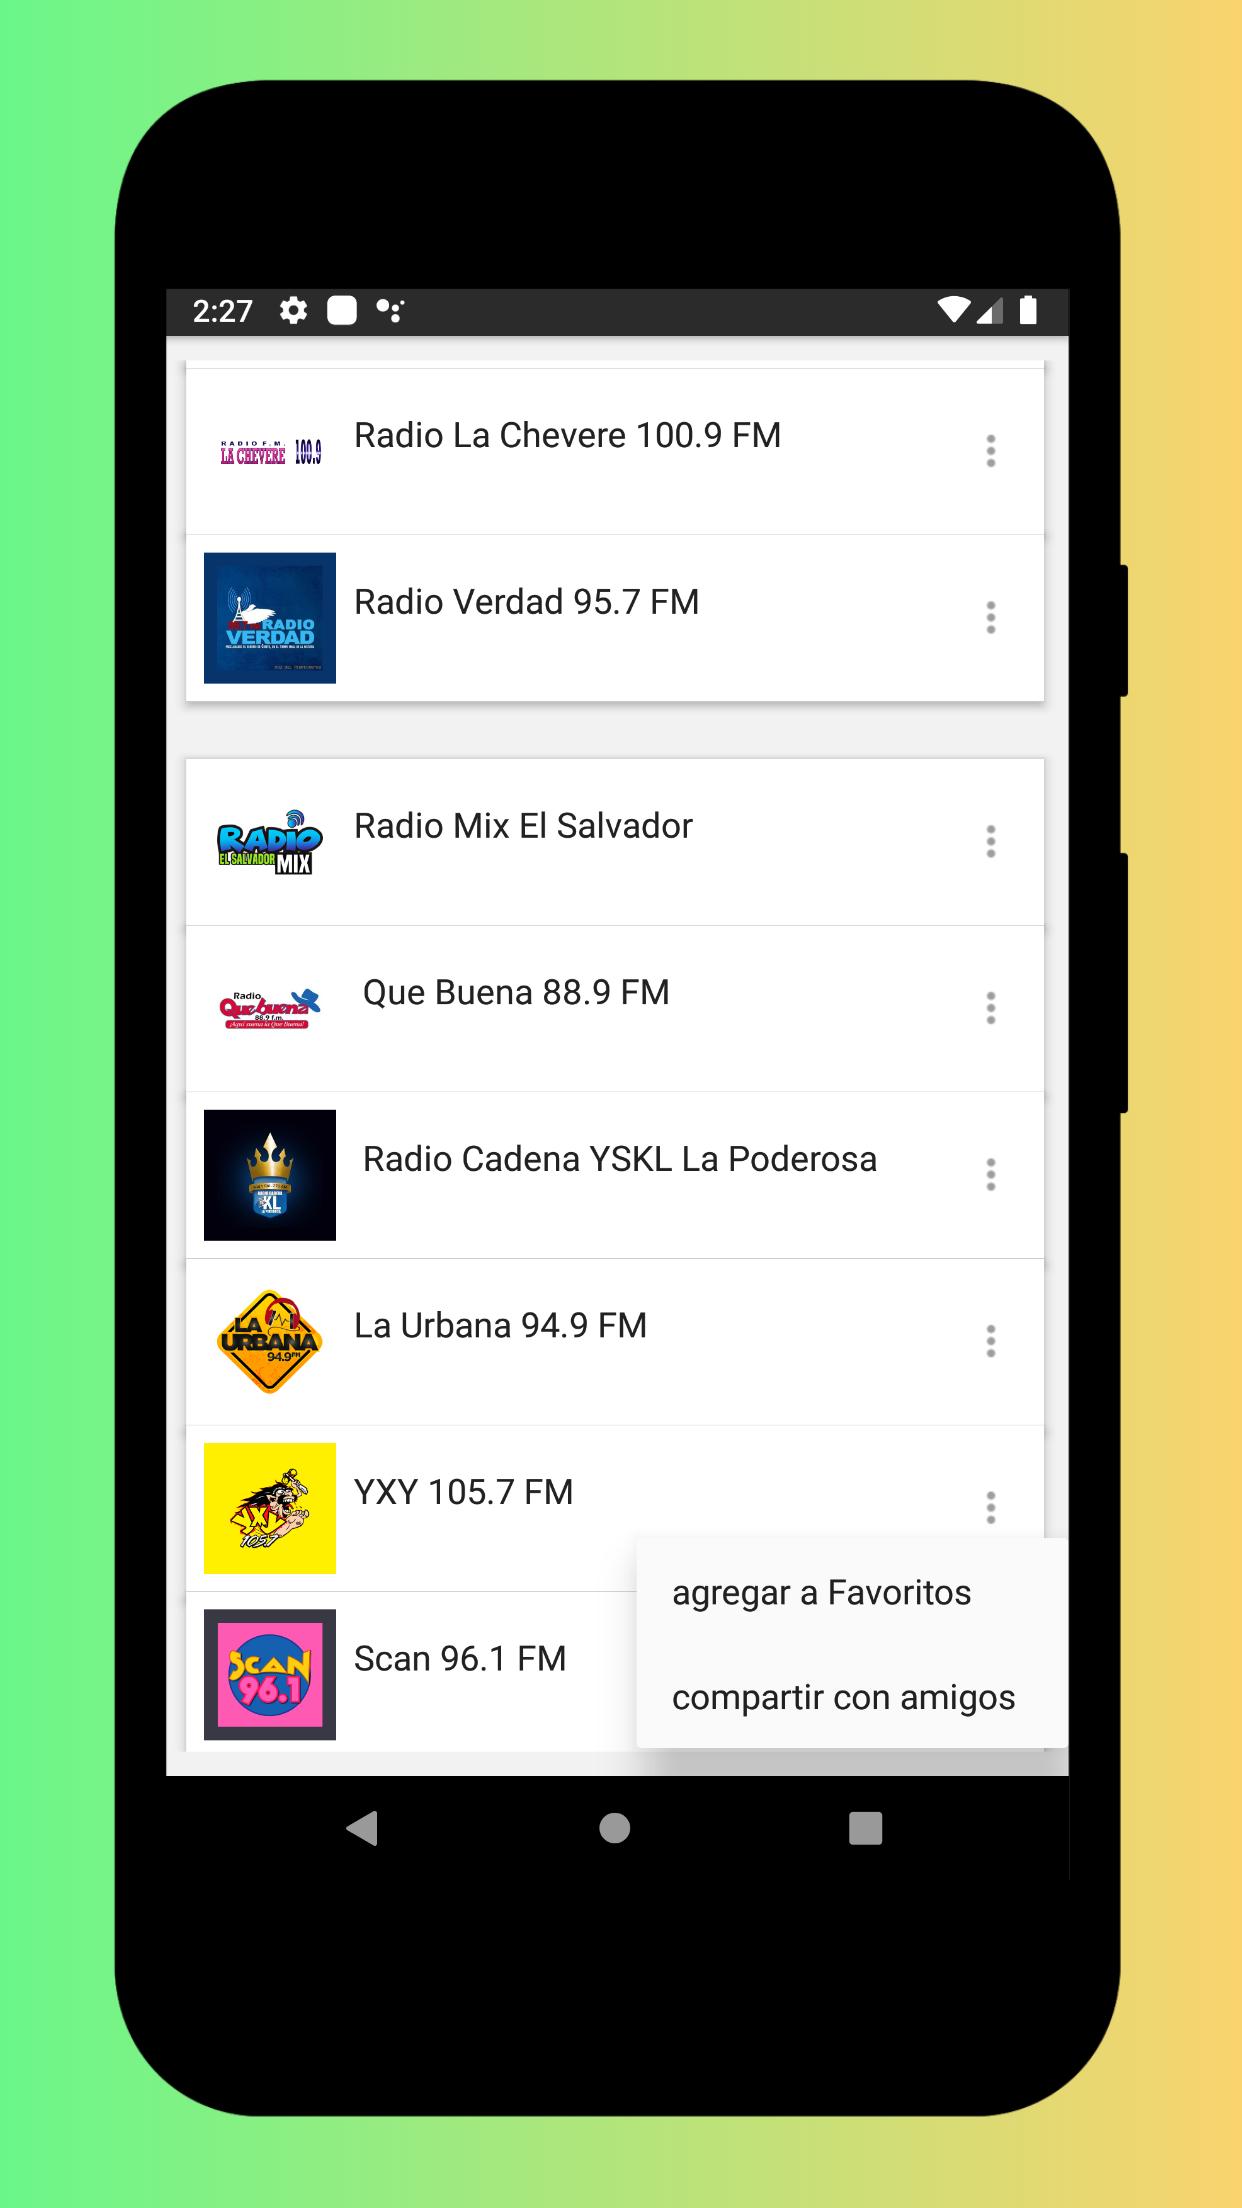 Radios de El Salvador en Vivo - Emisoras de Radio for Android - APK Download